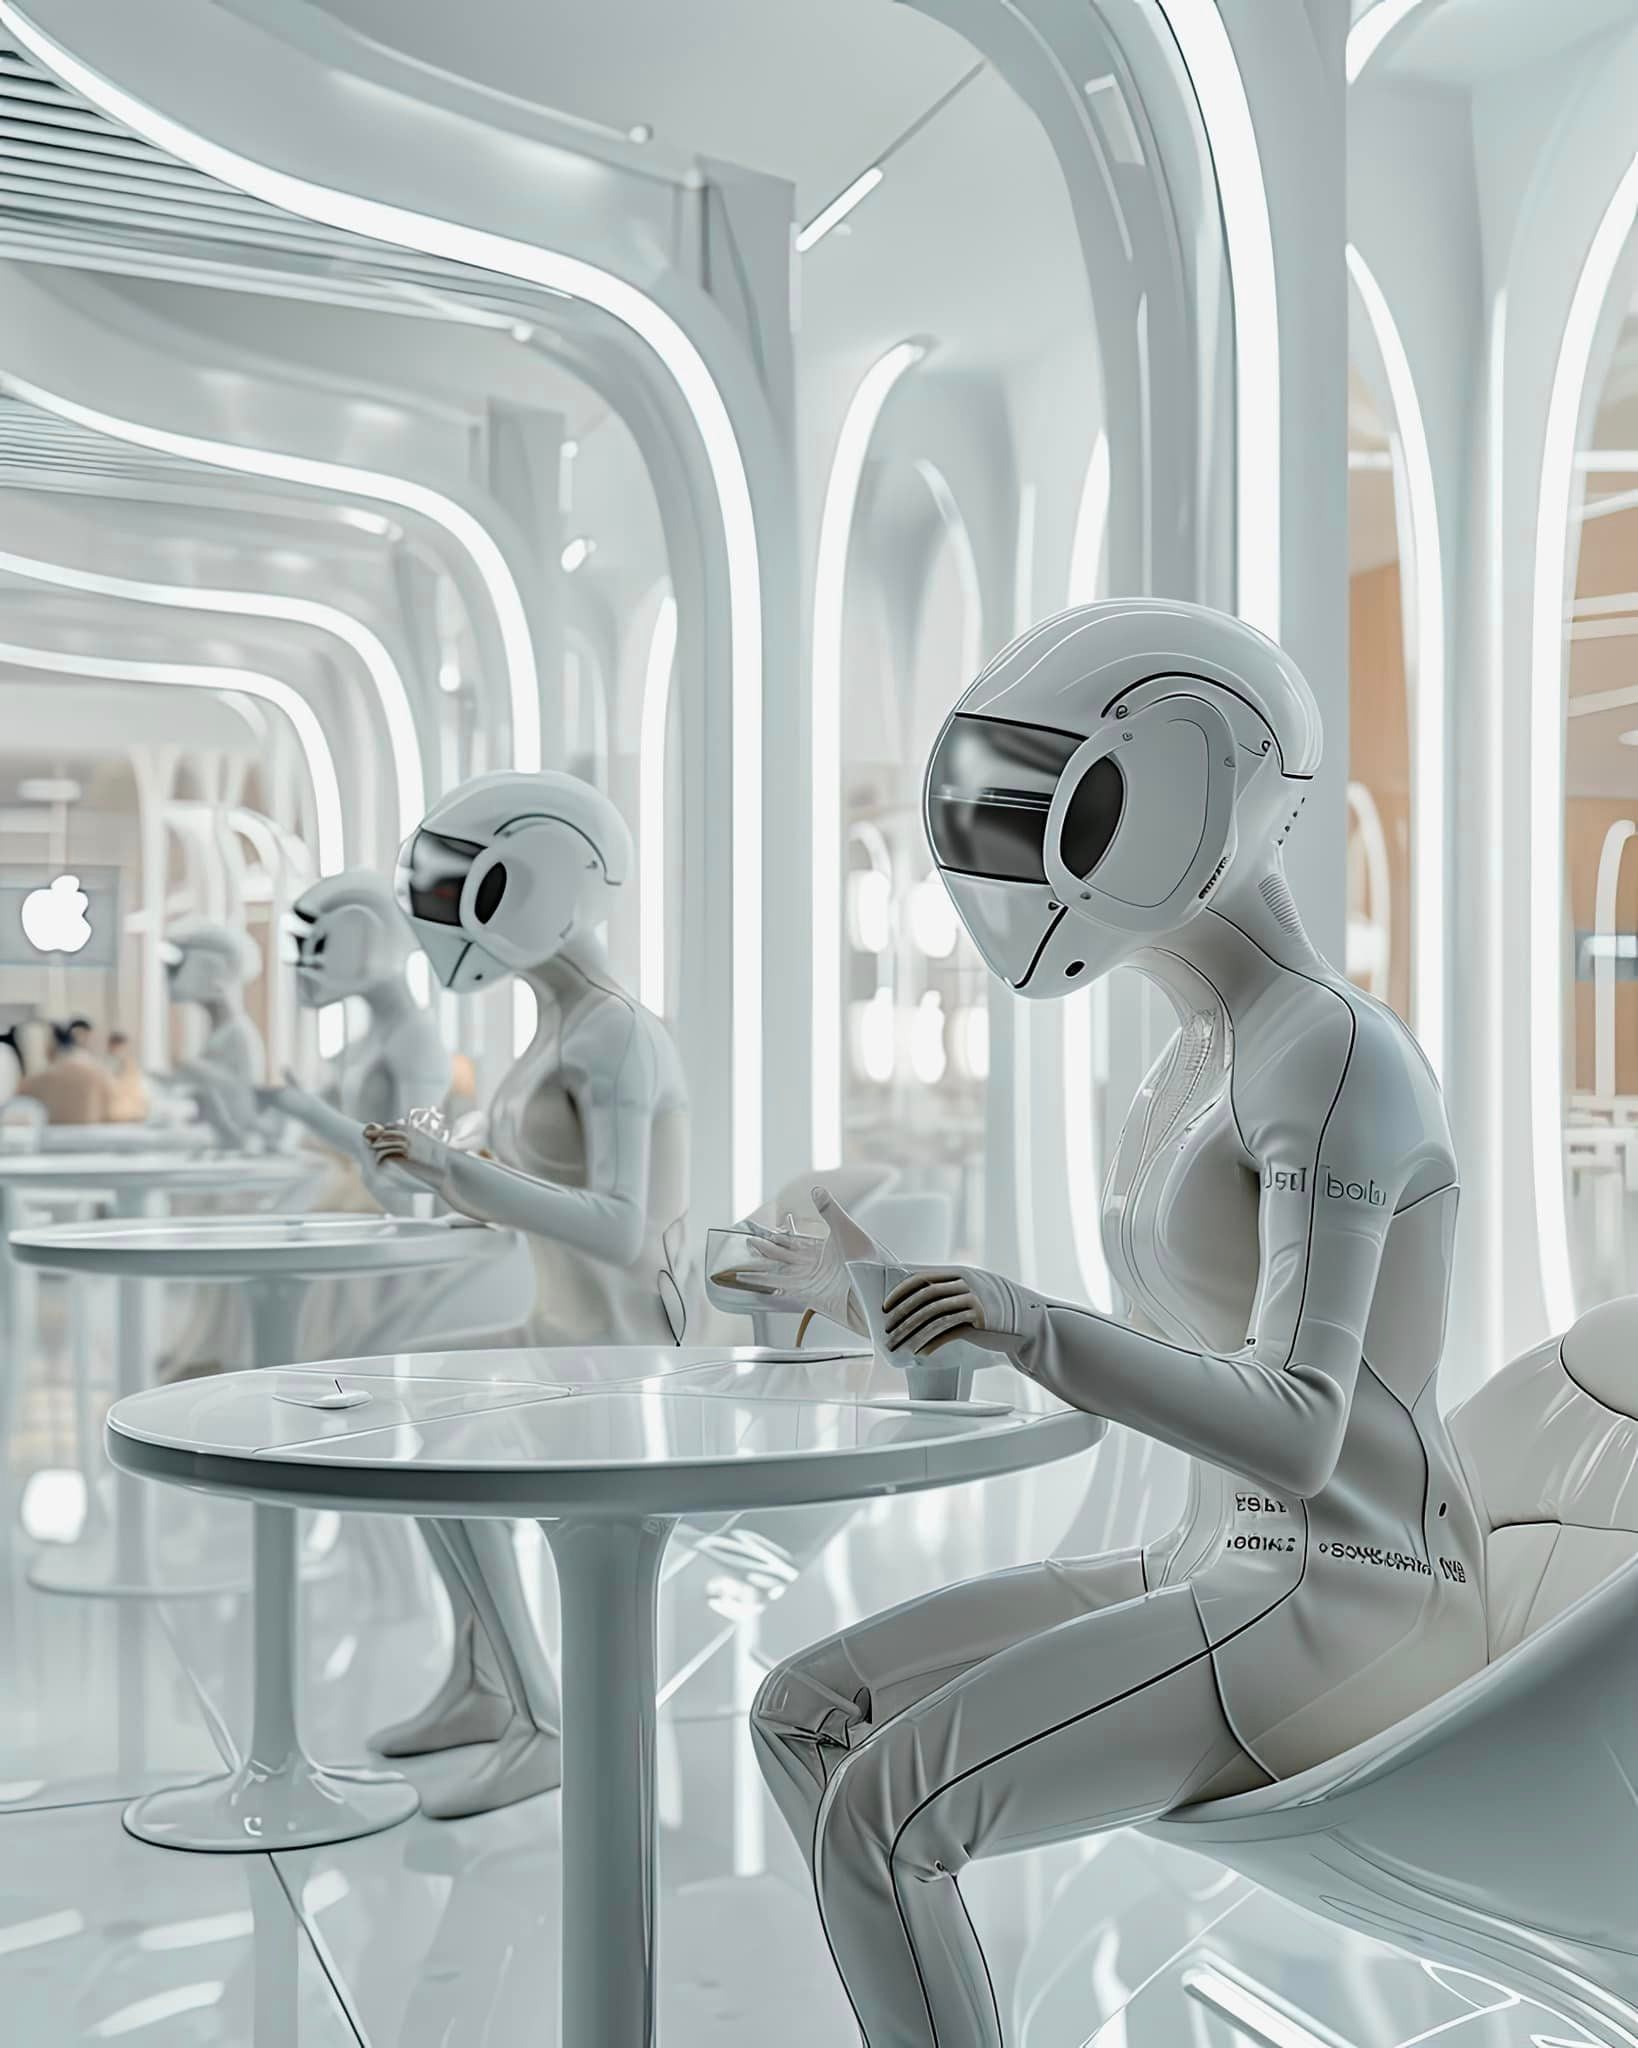 El comedor del futuro según una IA